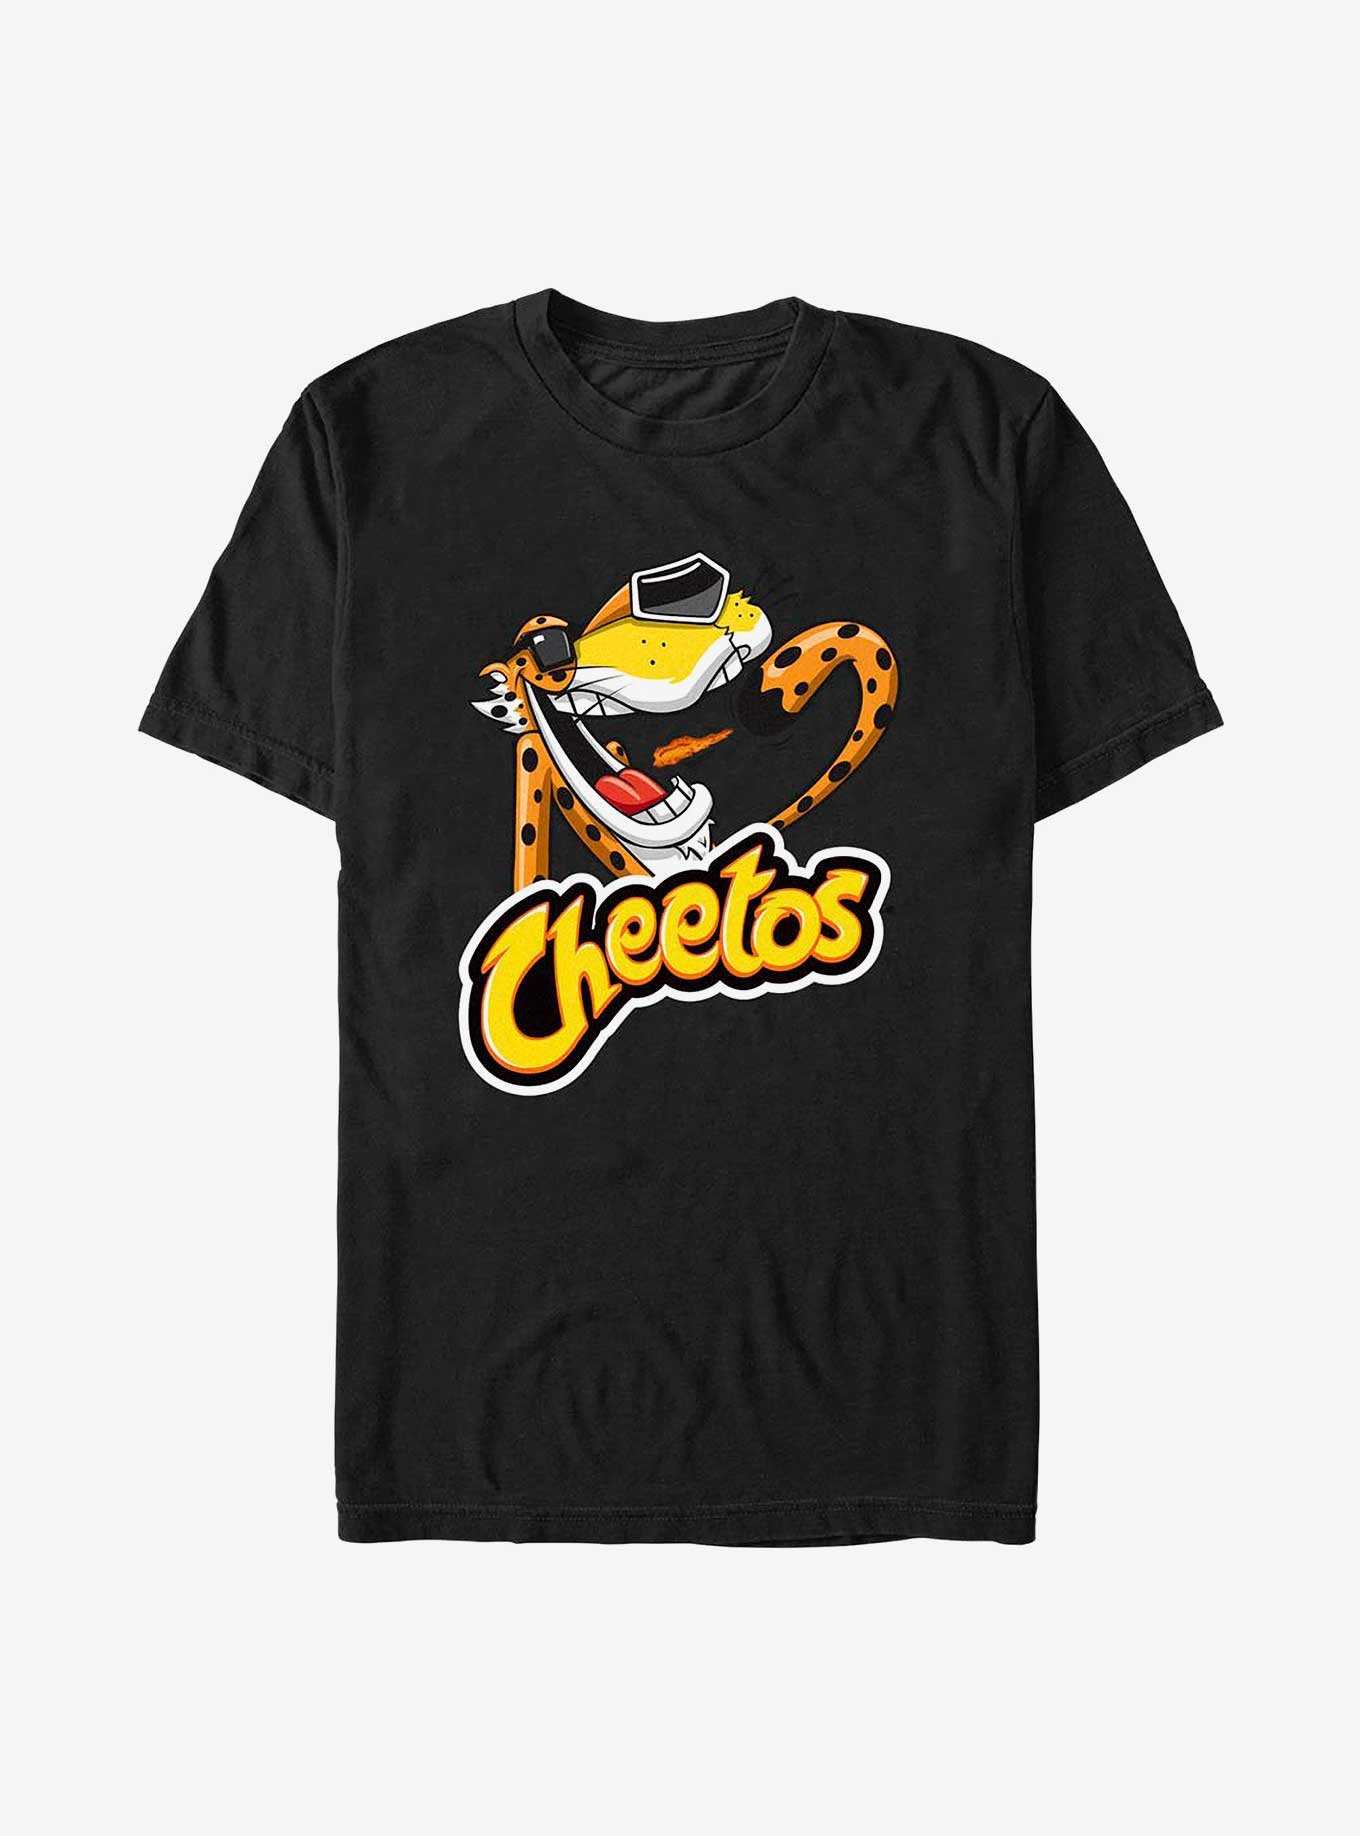 Cheetos Chester Cheetah T-Shirt, , hi-res